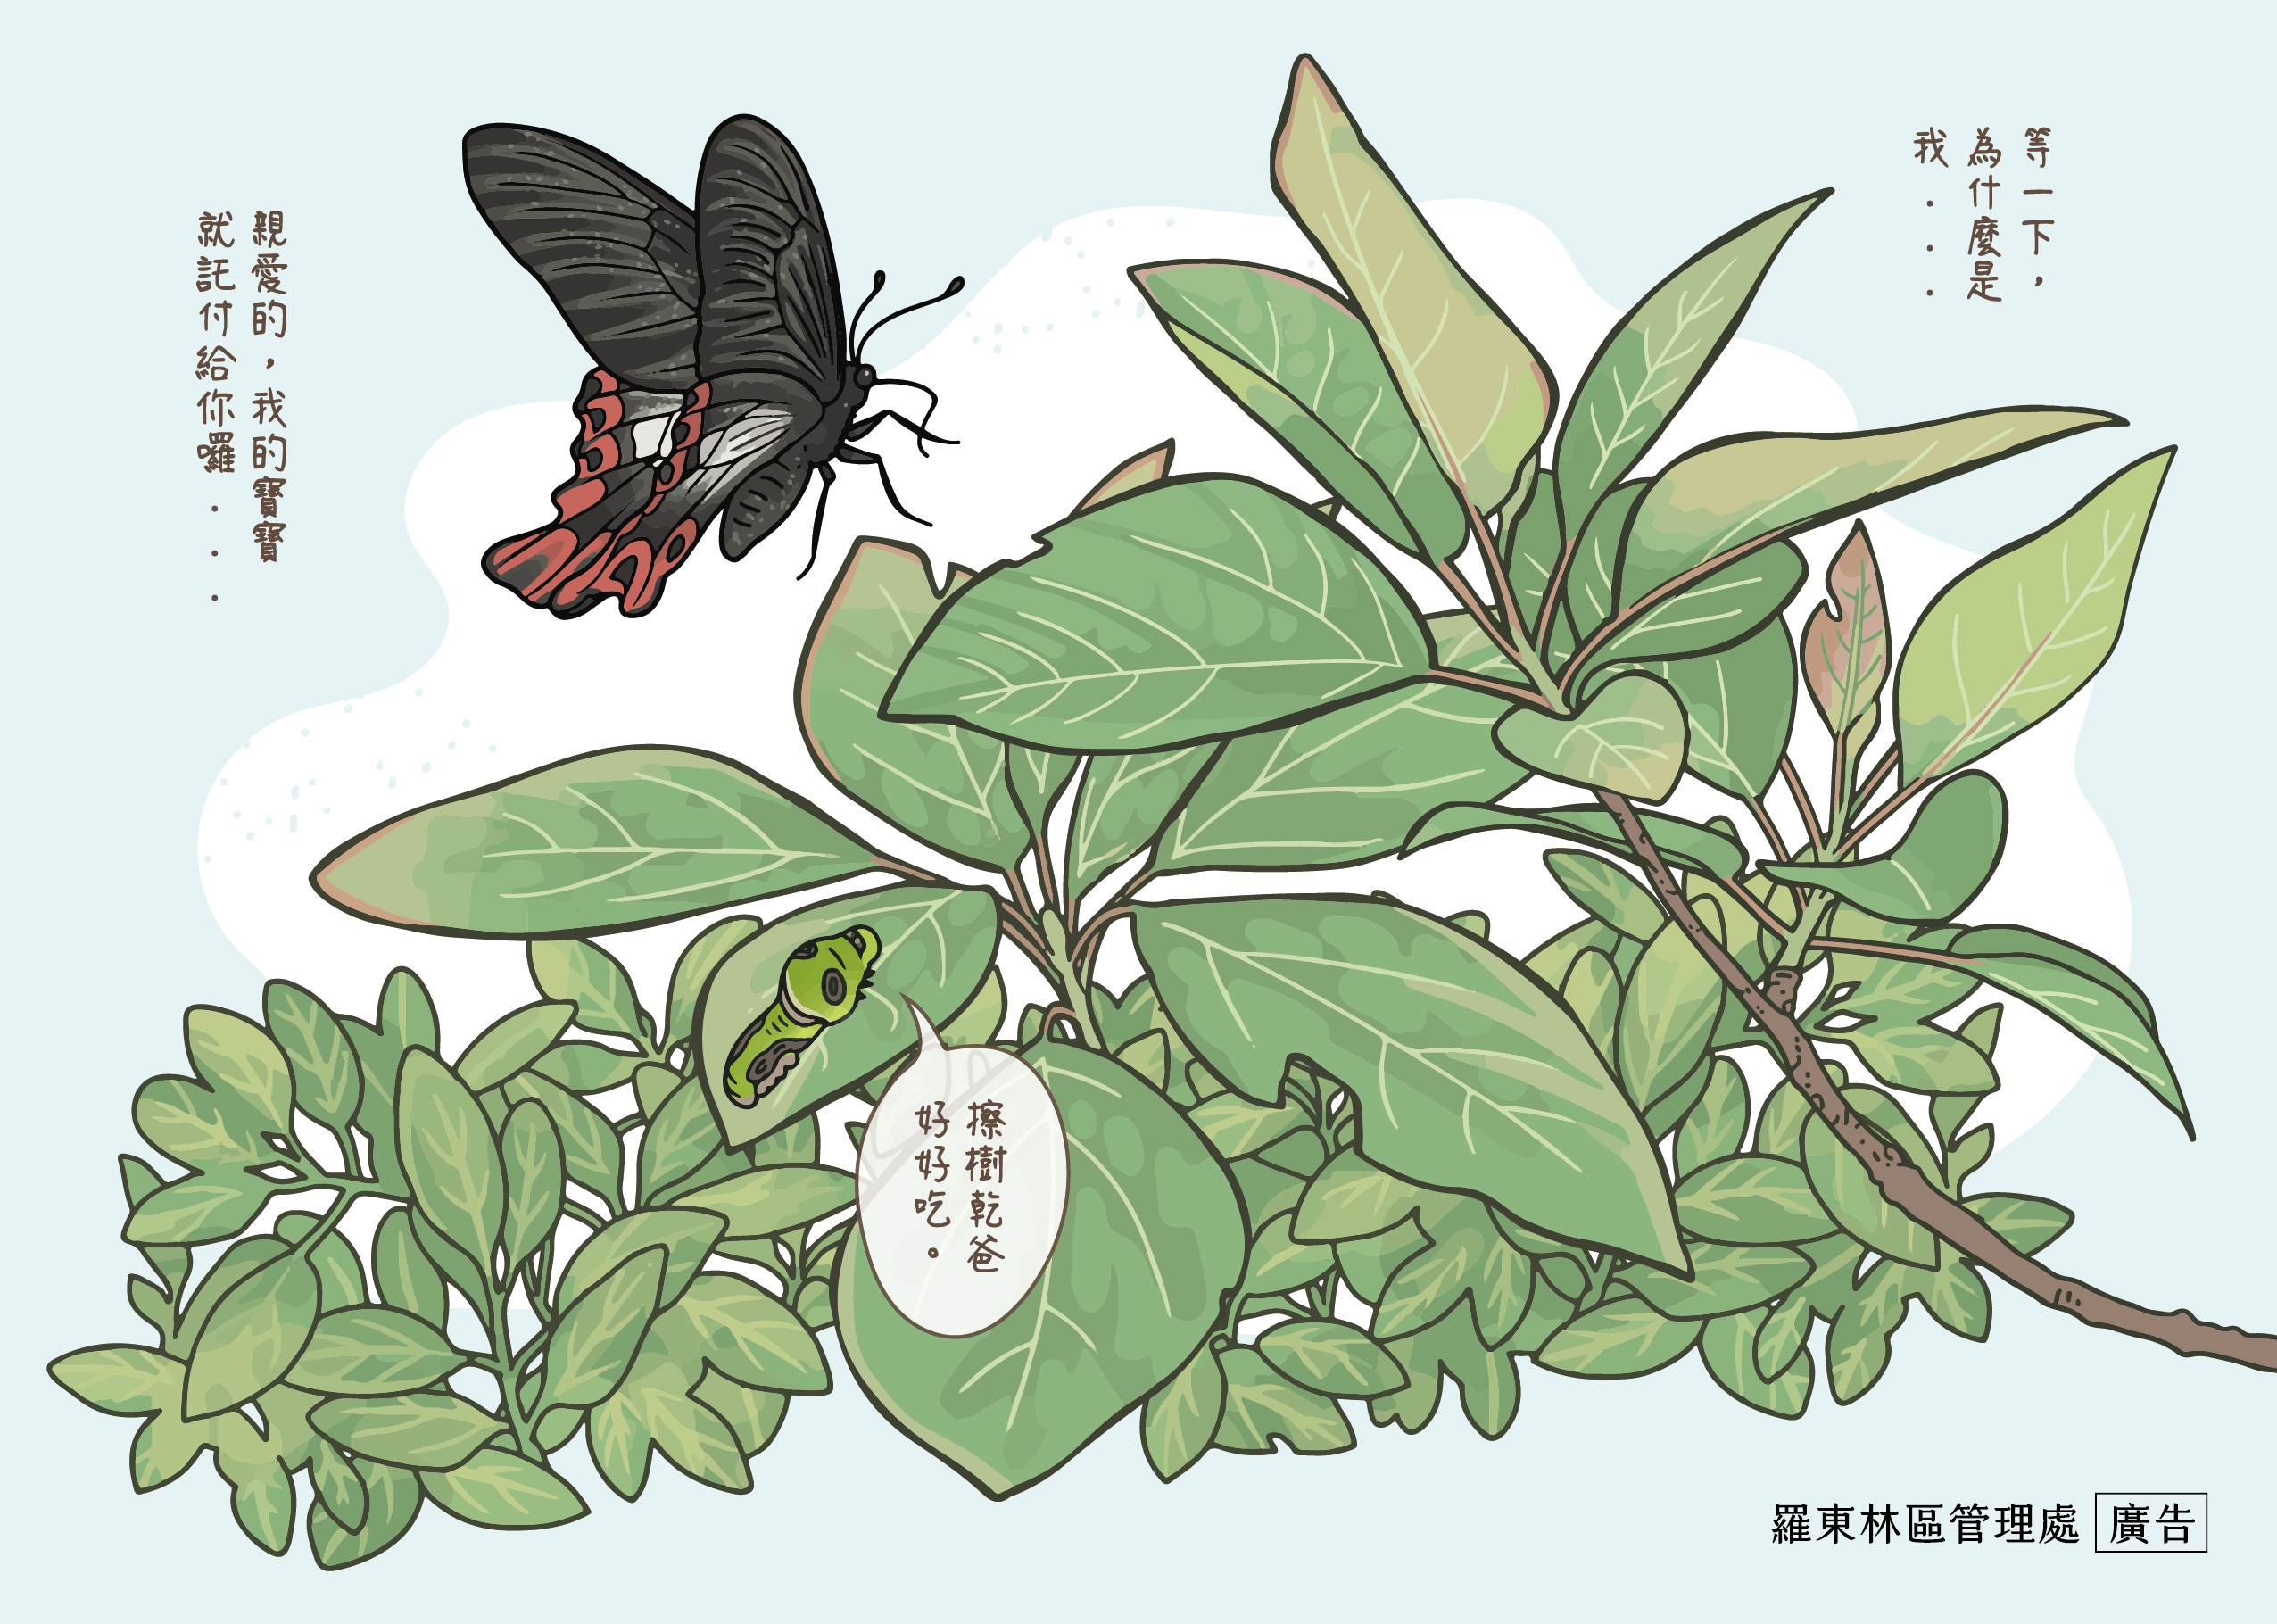 臺灣檫樹是寬尾鳳蝶的唯一食草